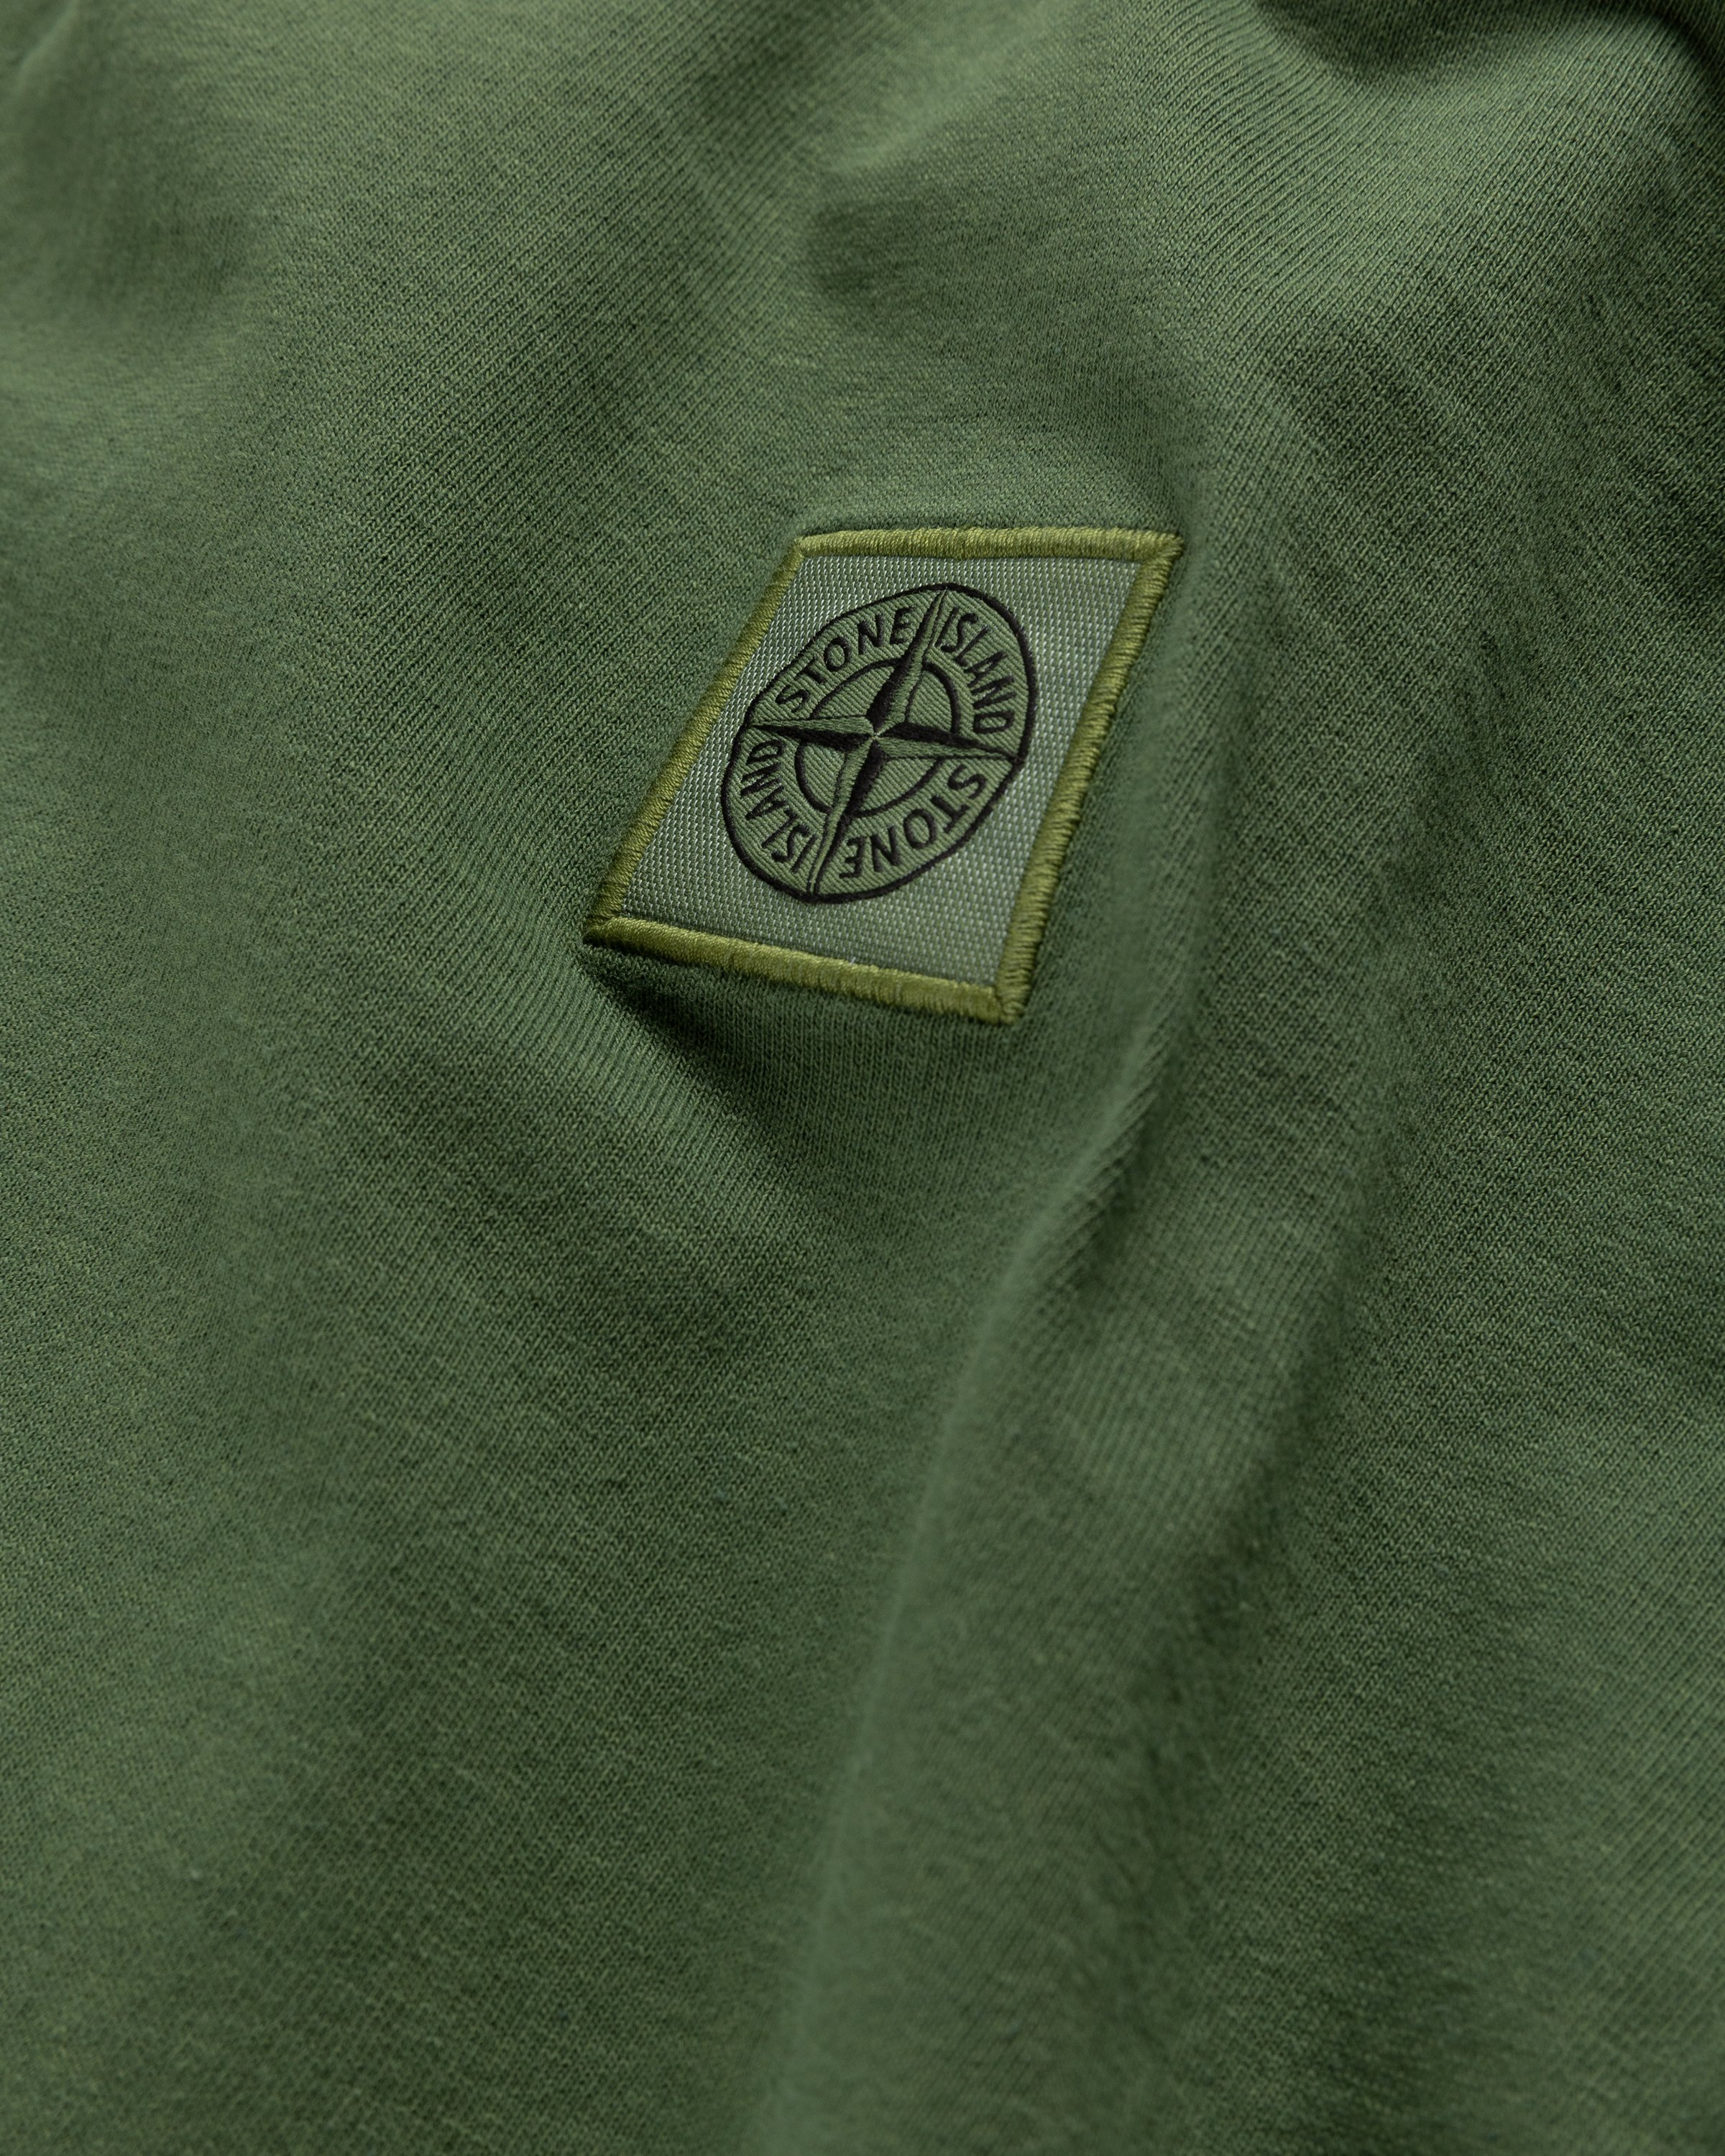 Stone Island - Fissato Longsleeve T-Shirt Olive - Clothing - Green - Image 3